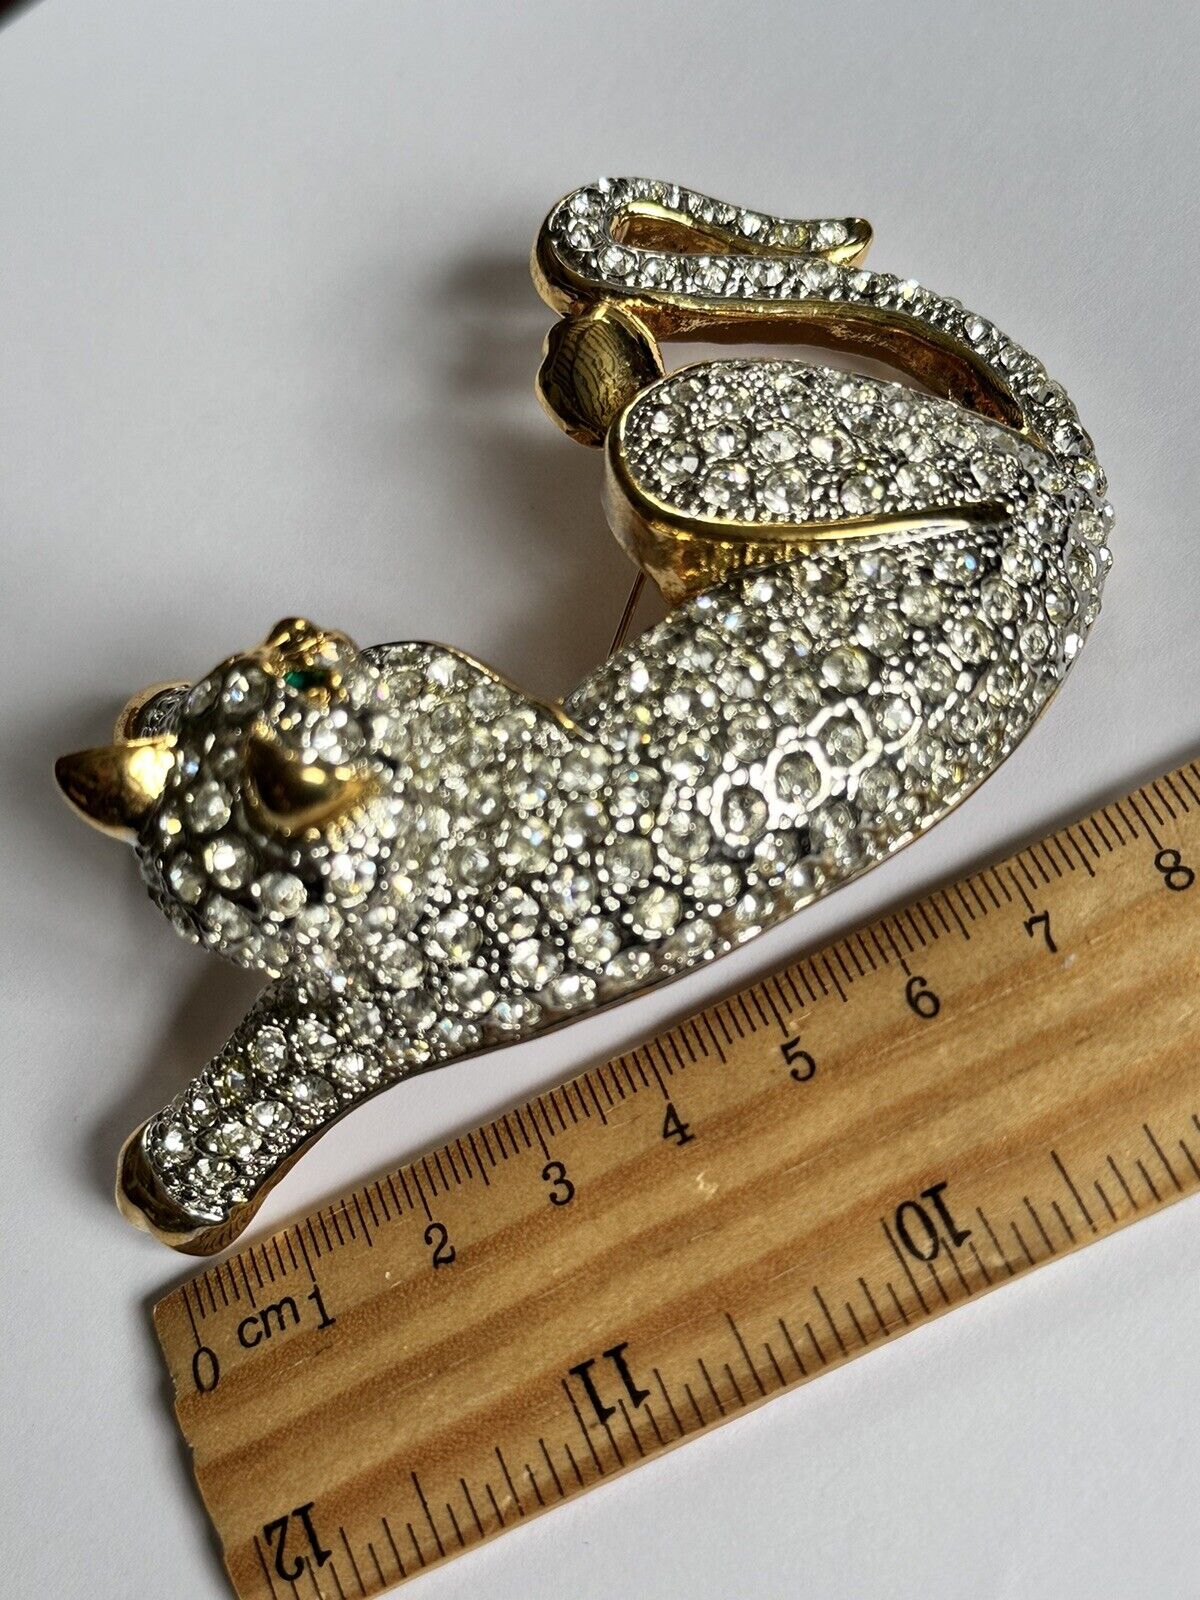 Vintage Runway Gold Tone Large Diamanté Cat Brooch